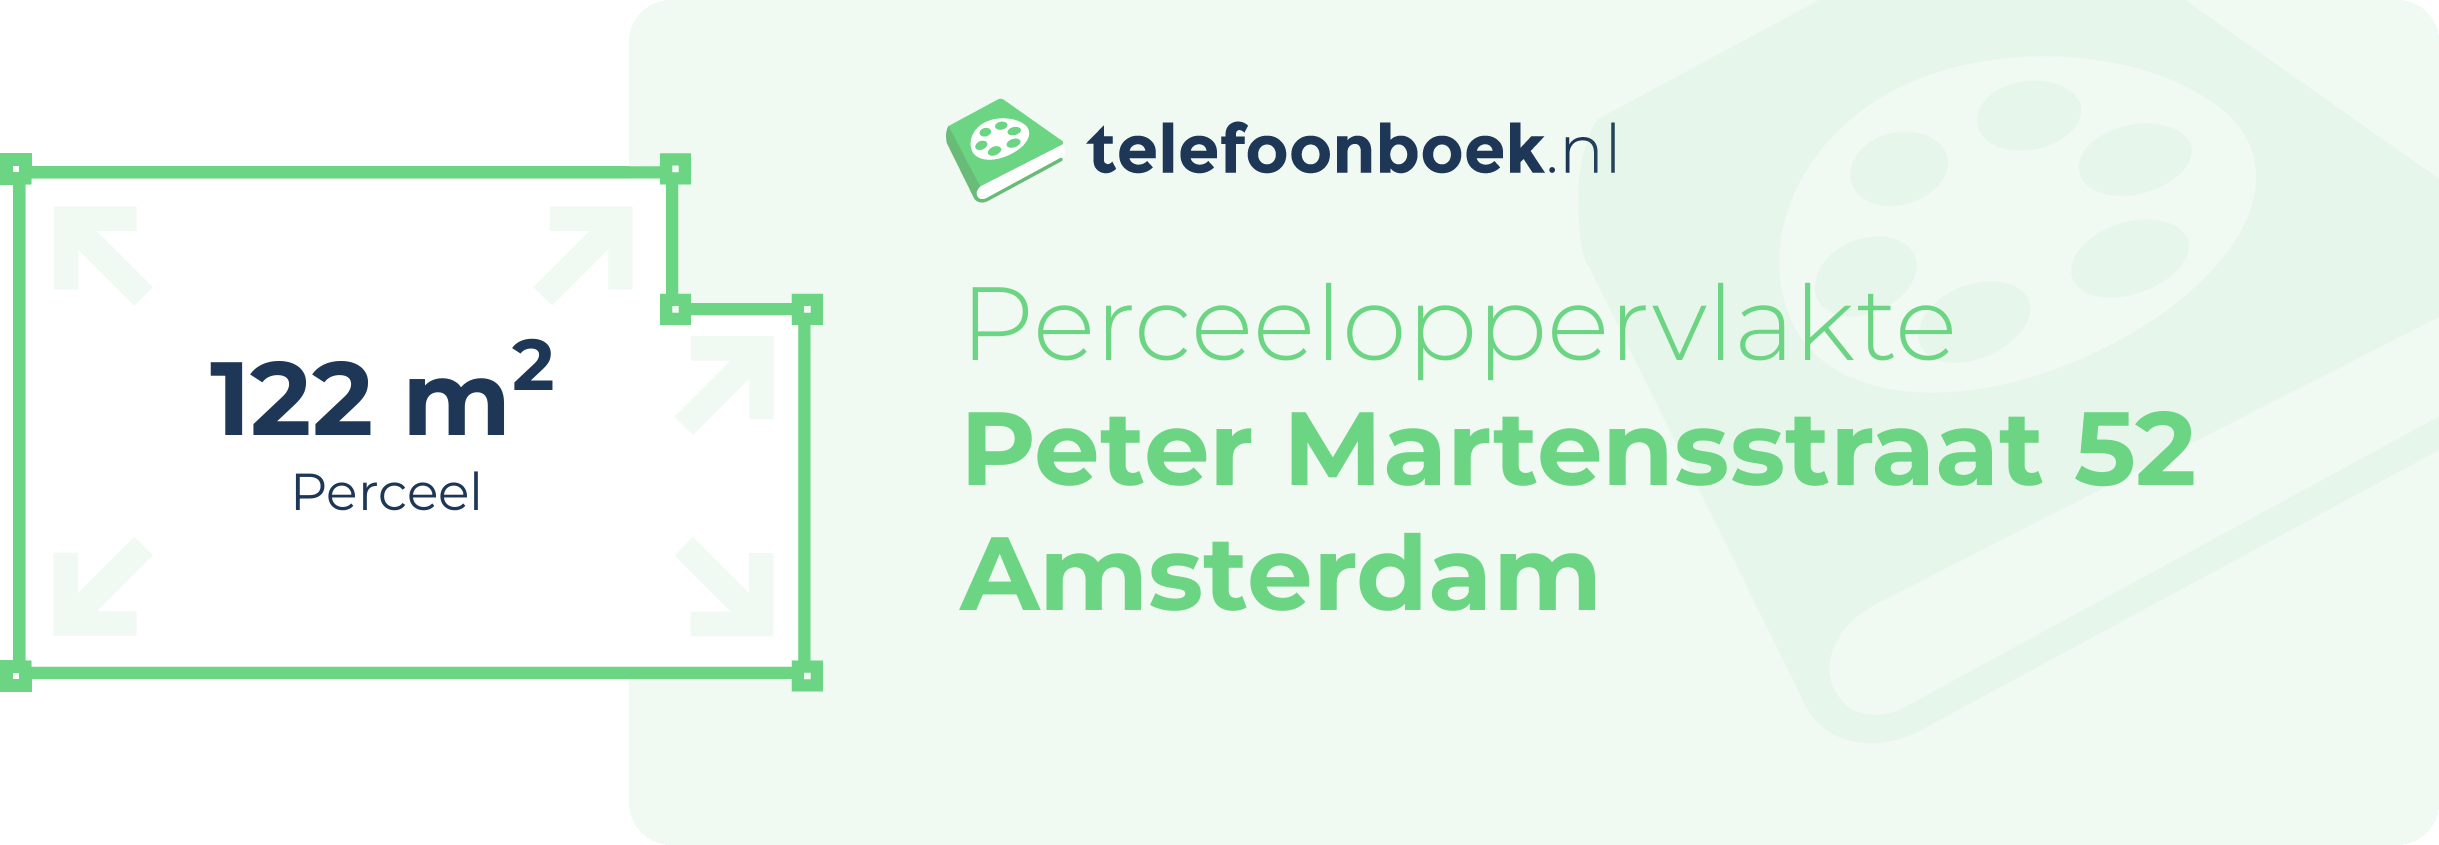 Perceeloppervlakte Peter Martensstraat 52 Amsterdam